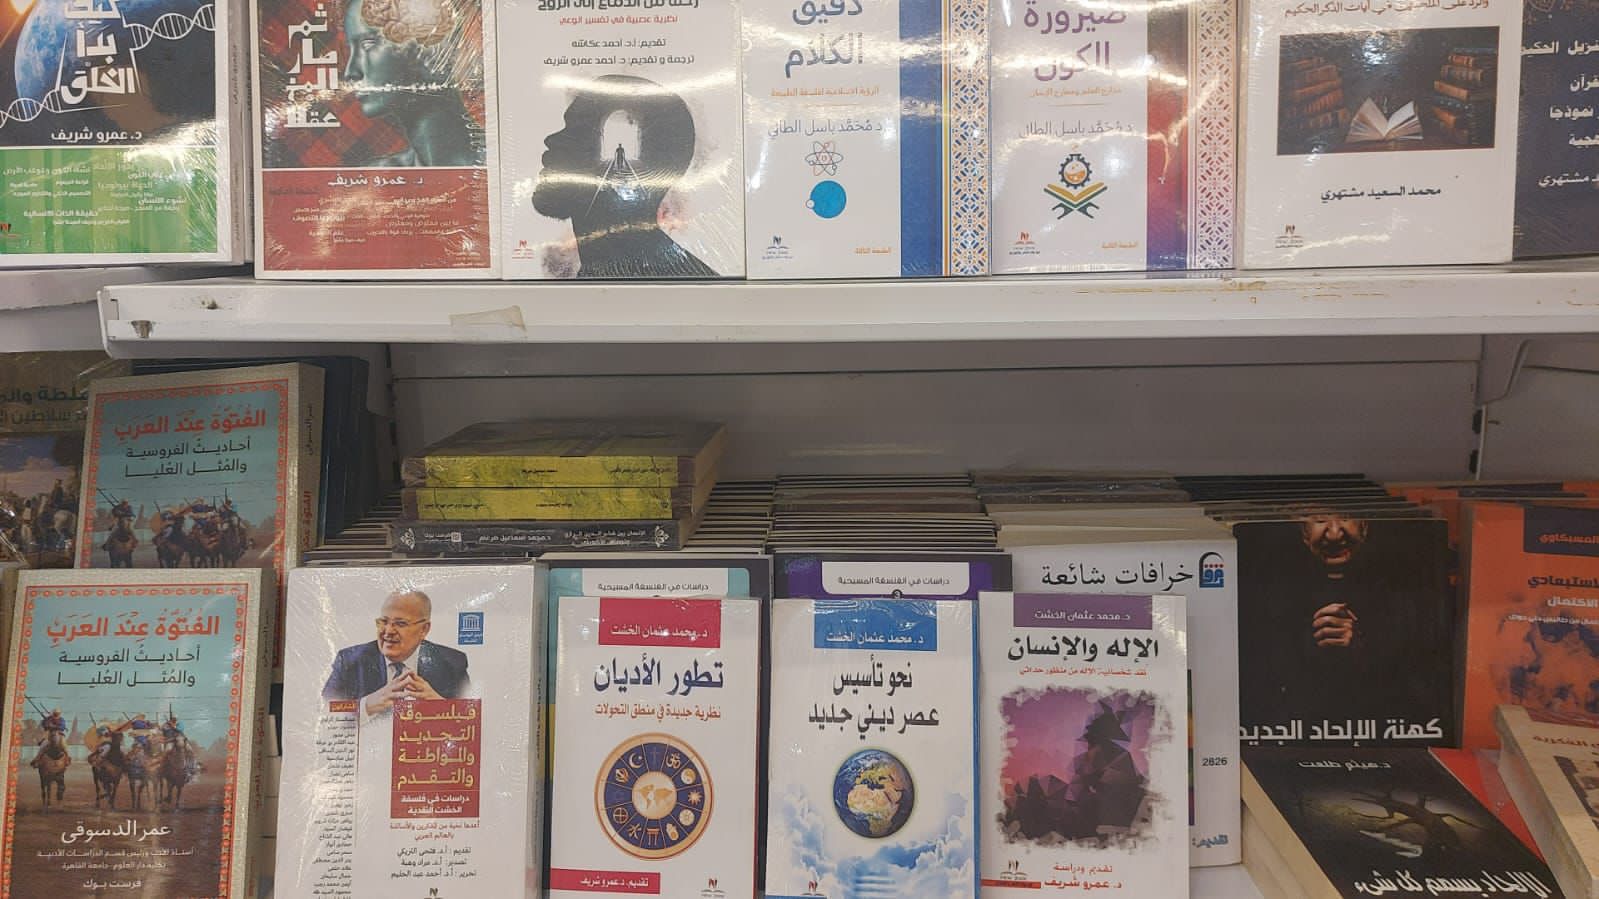 أحدث مؤلفات رئيس جامعة القاهرة في معرض المدينة المنورة للكتاب بالمملكة العربية السعودية